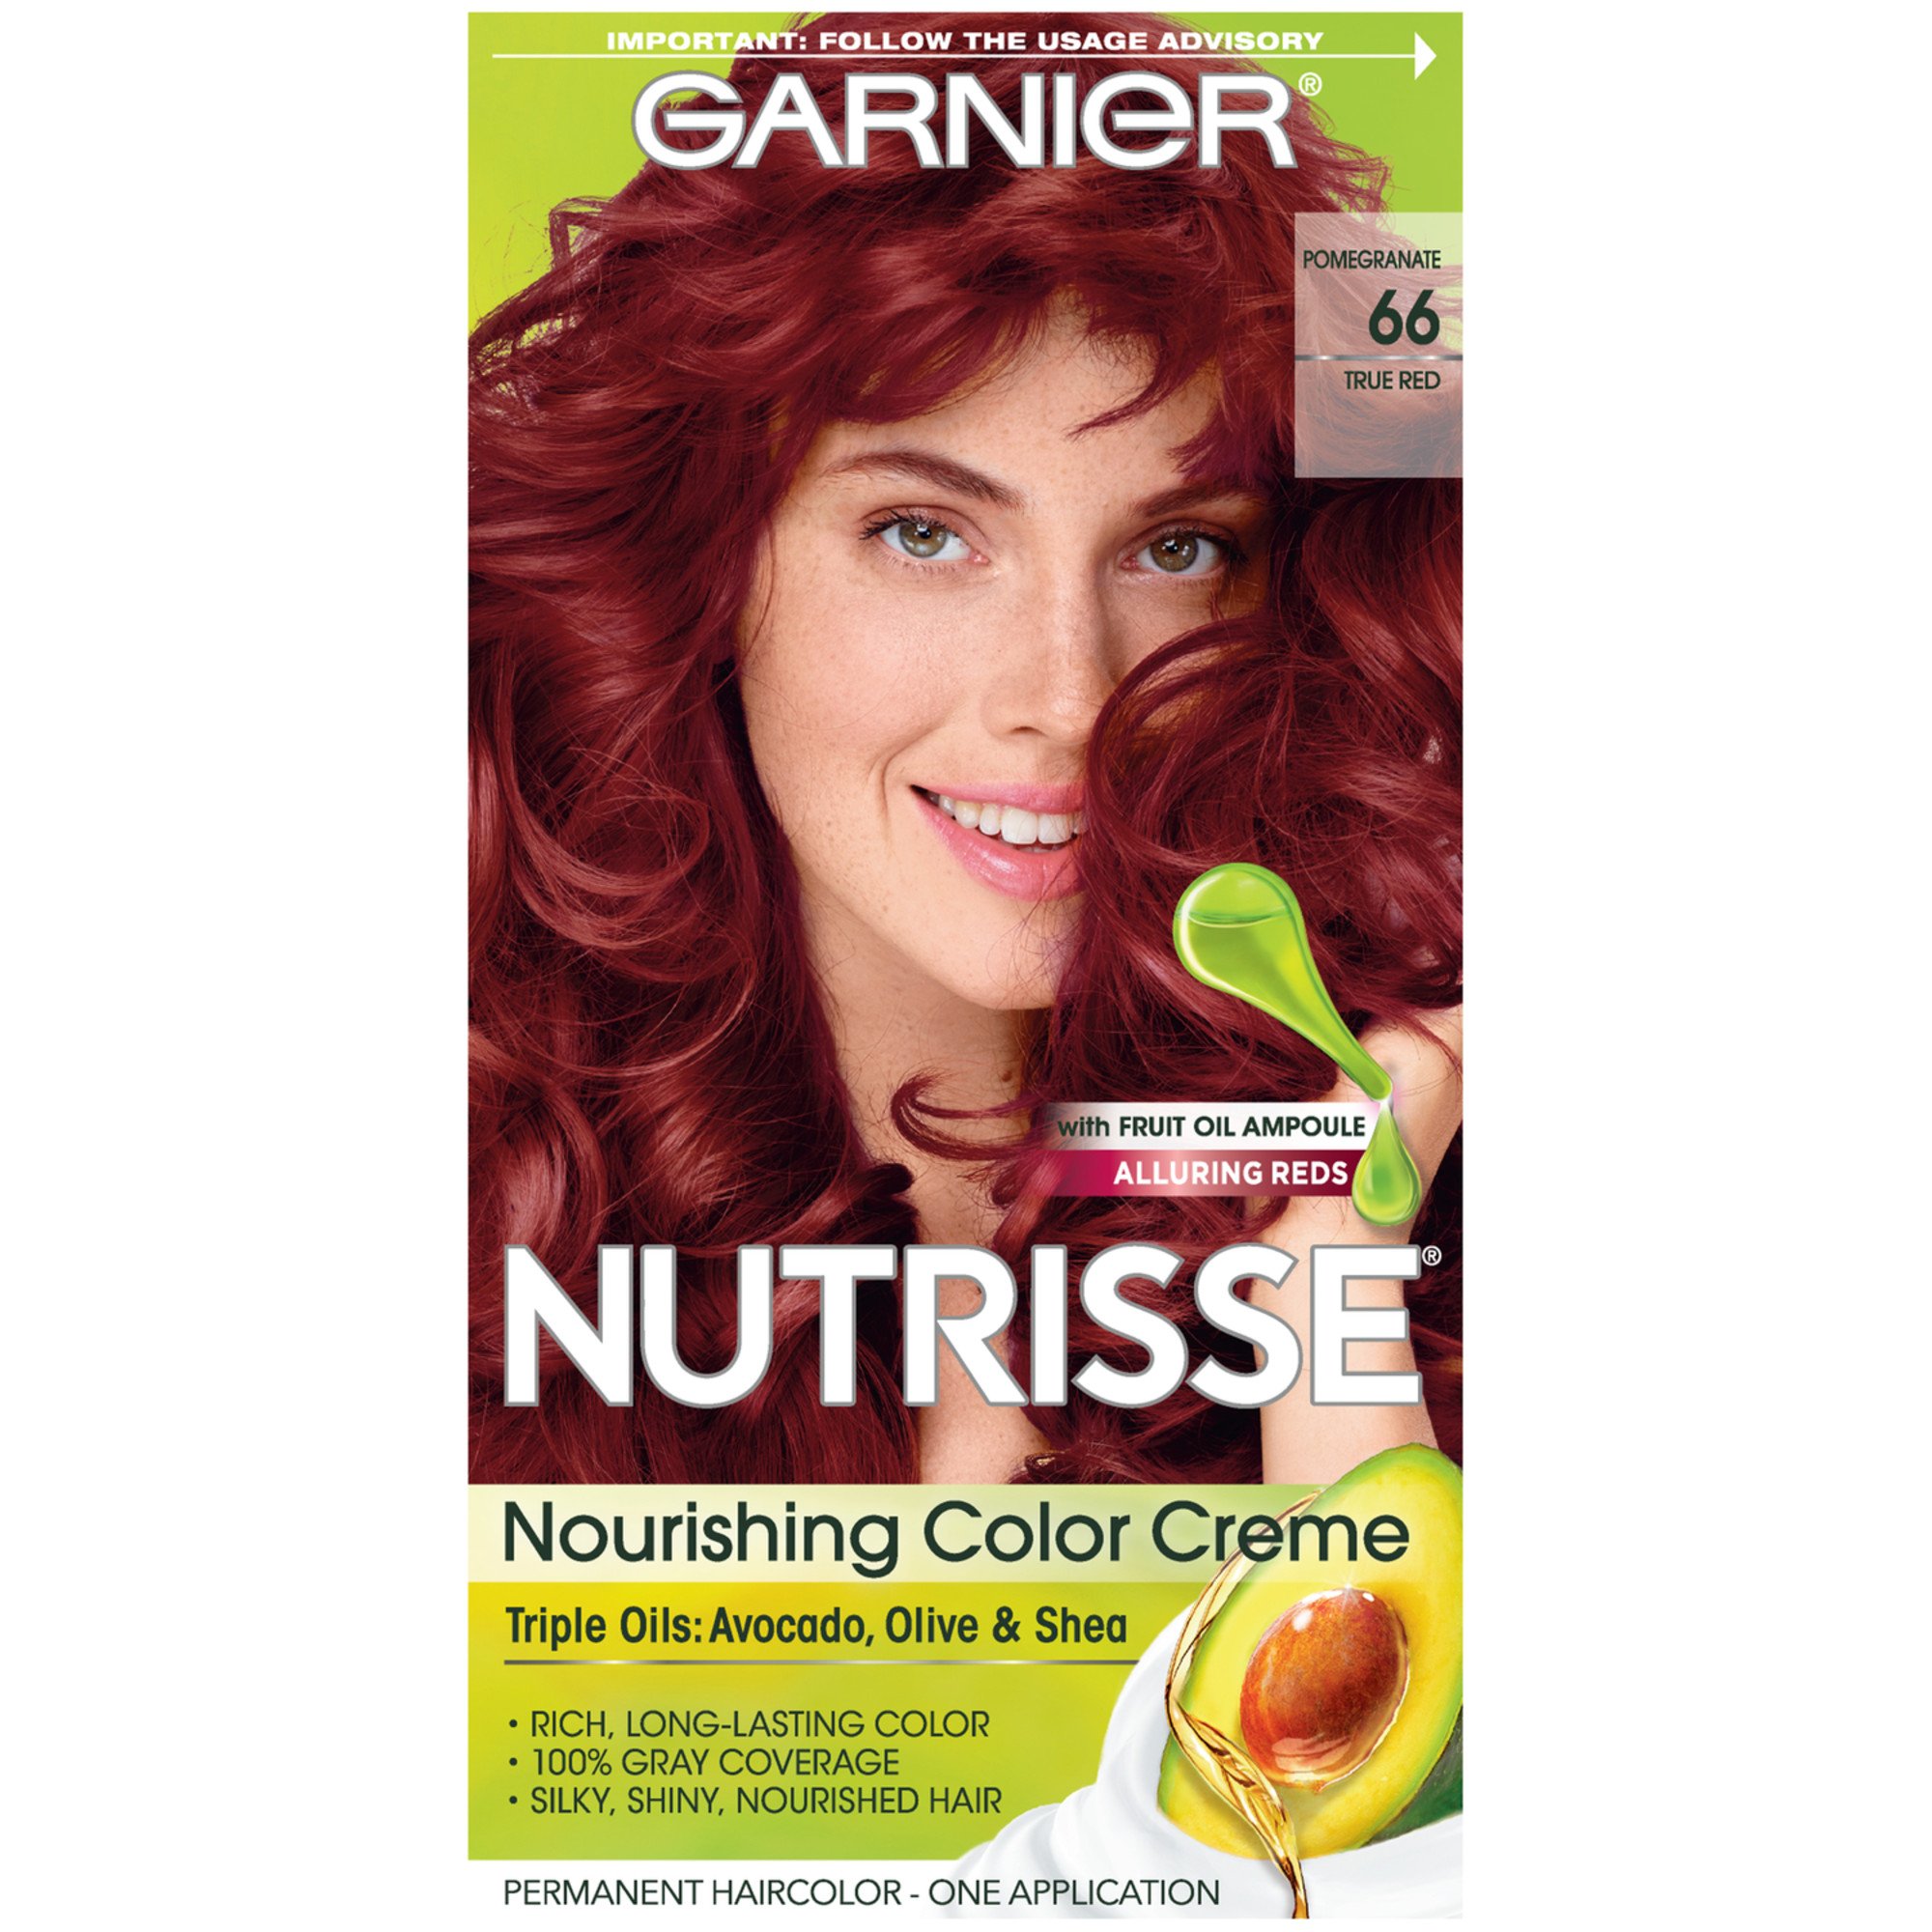 Garnier Nutrisse Nourishing Hair Color Crème - 66 True Red (Pomegranate) - Shop Hair Color H-E-B